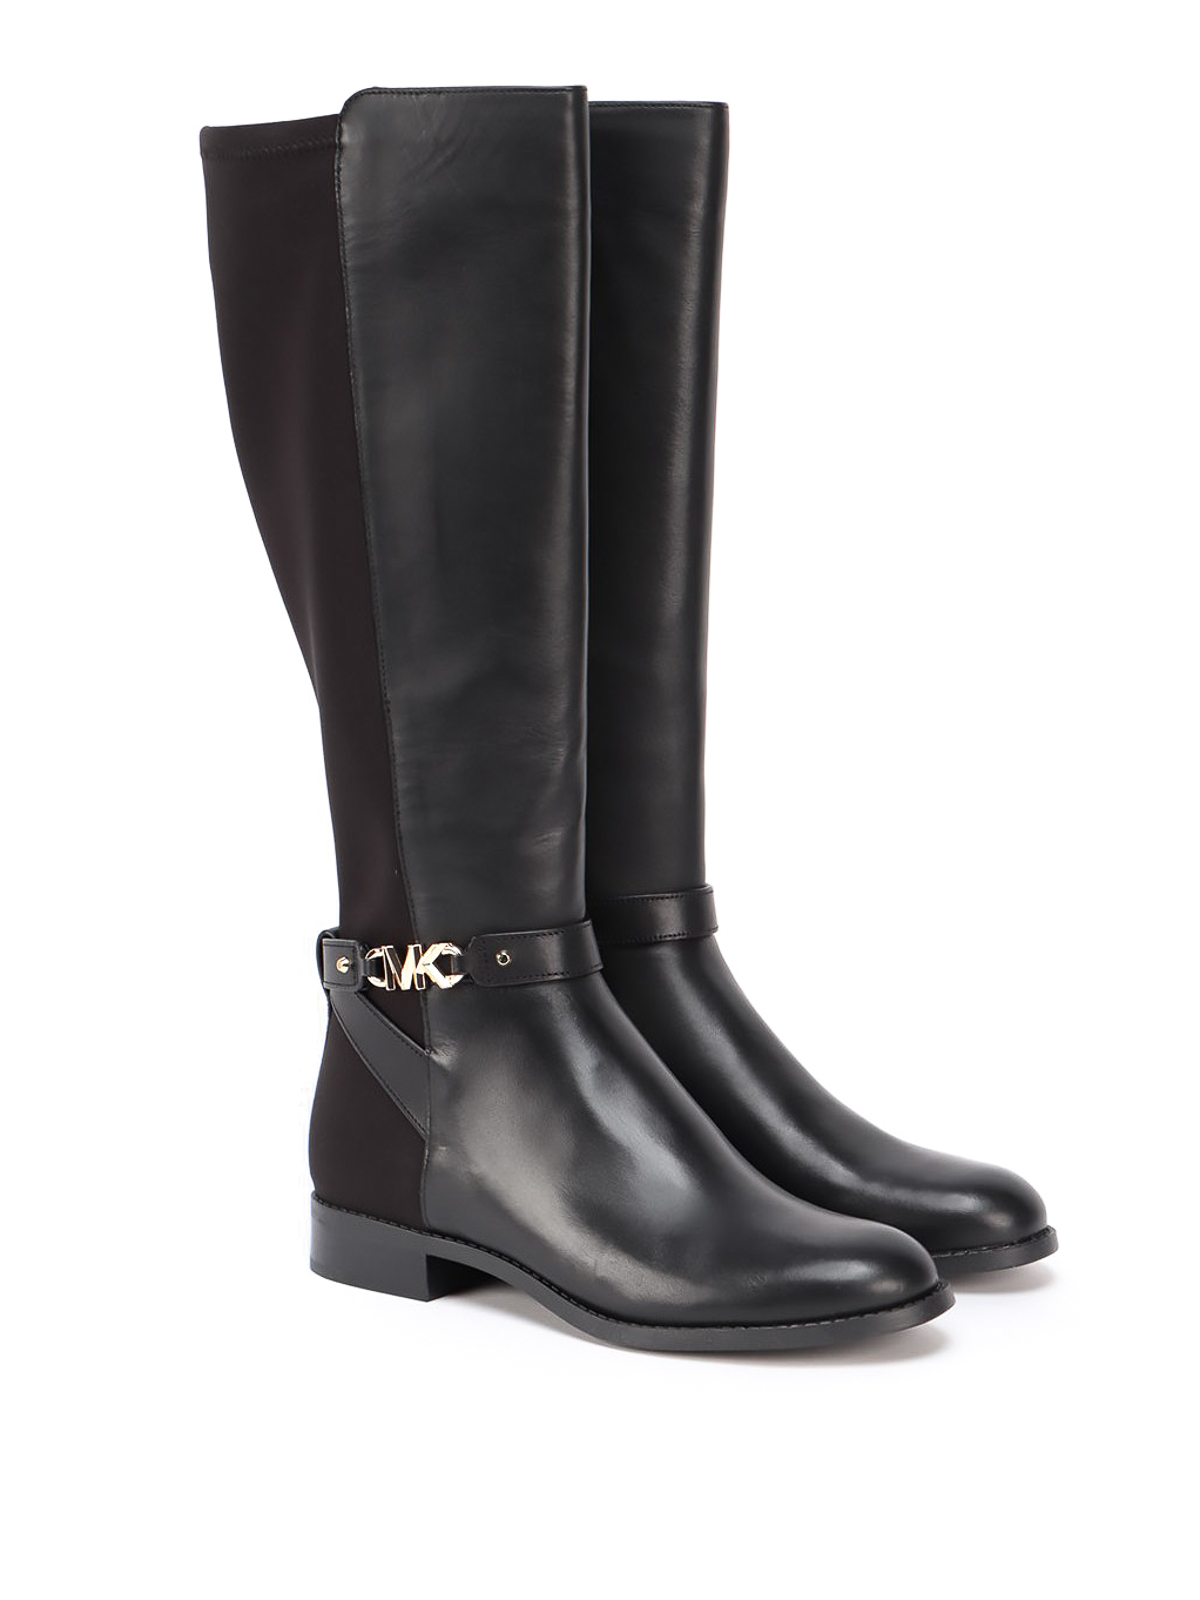 MICHAEL Michael Kors Karis Rain Boots in Black